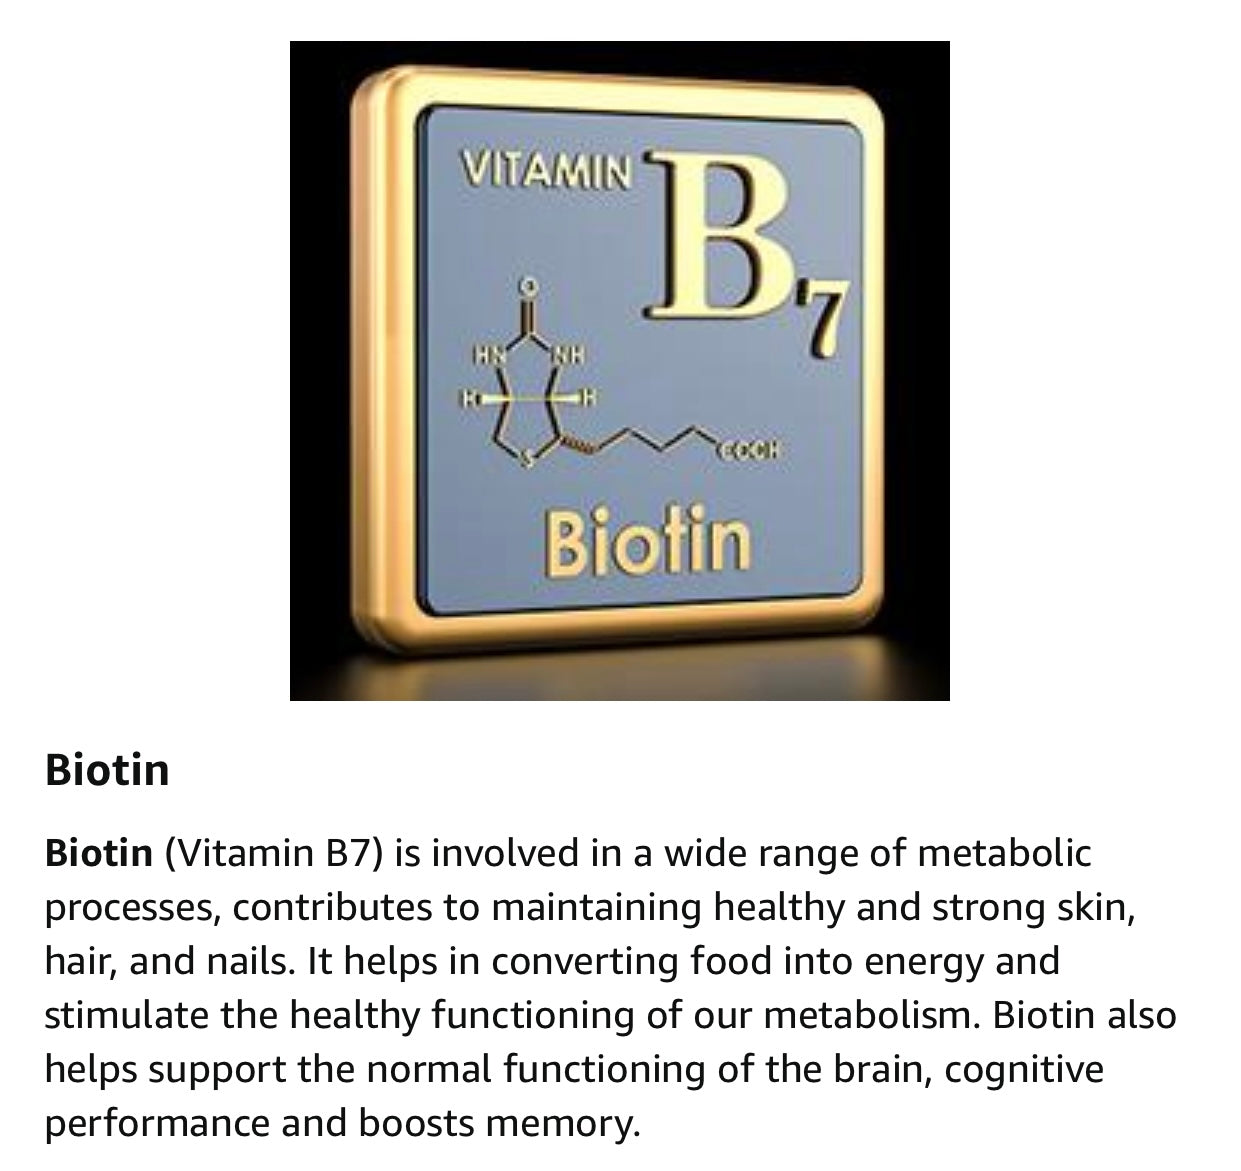 Marine Collagen+ Biotin & Vitamin C.